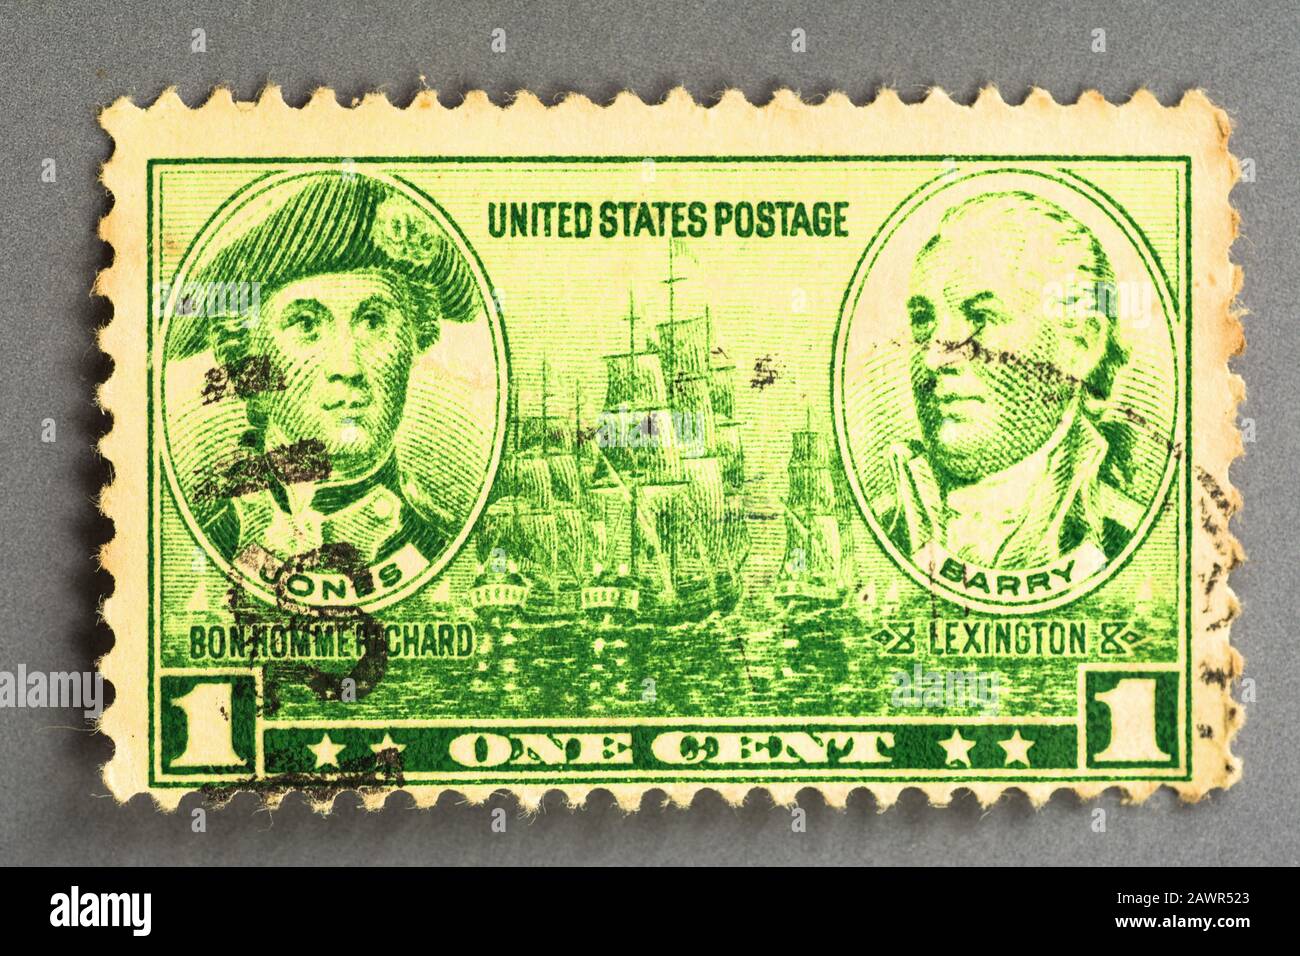 Un francobollo statunitense del 1936 che celebra gli Eroi Navali. Illustrazioni tratte da un dipinto di Jones di C W Peale e di Barry di Gilbert Stuart. Foto Stock